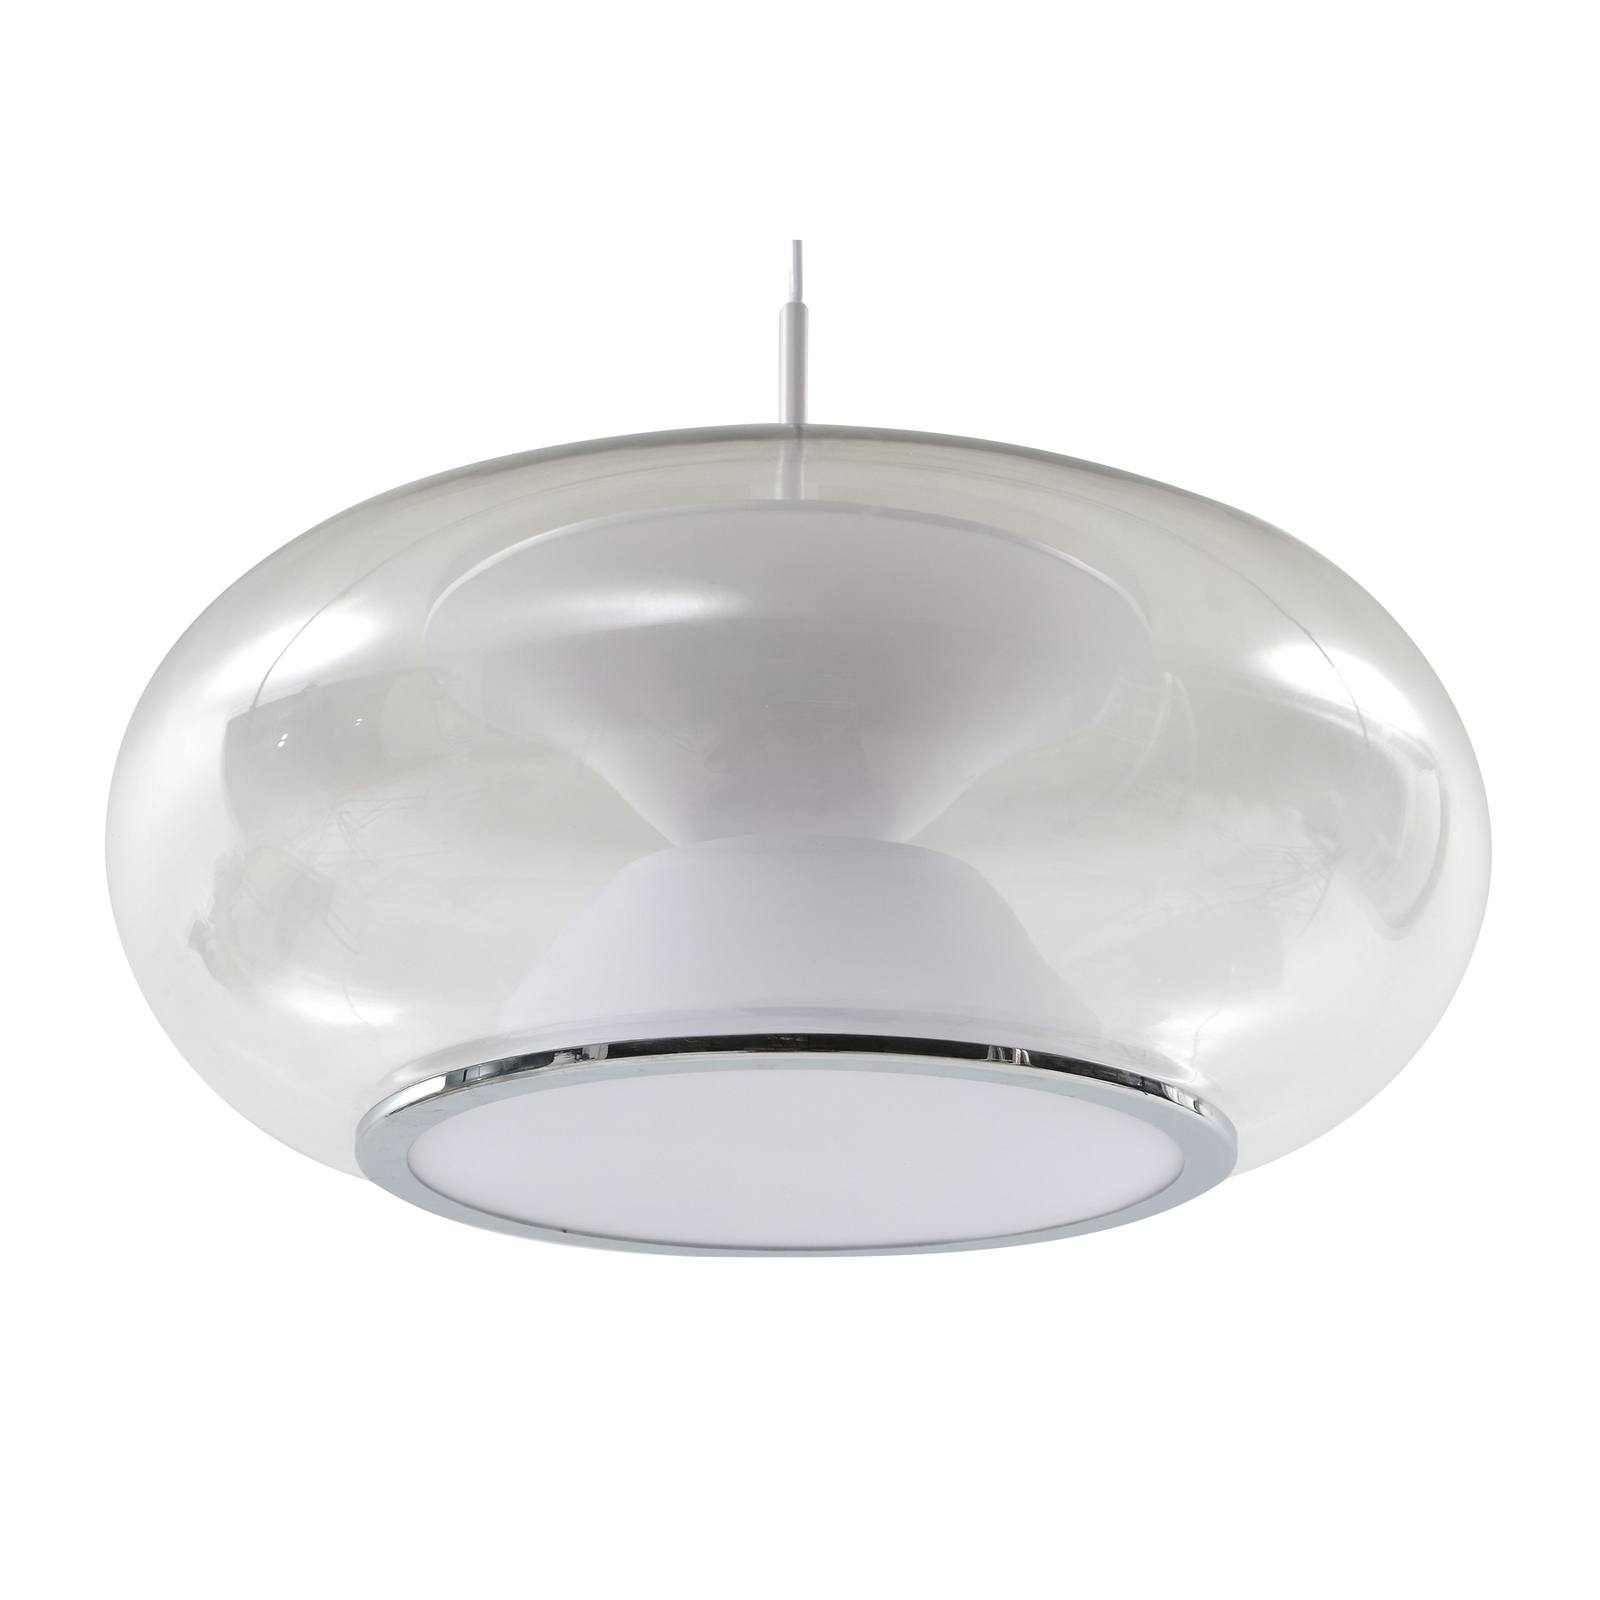 Lucande LED hanglamp Orasa, glas, wit/helder, Ø 43 cm